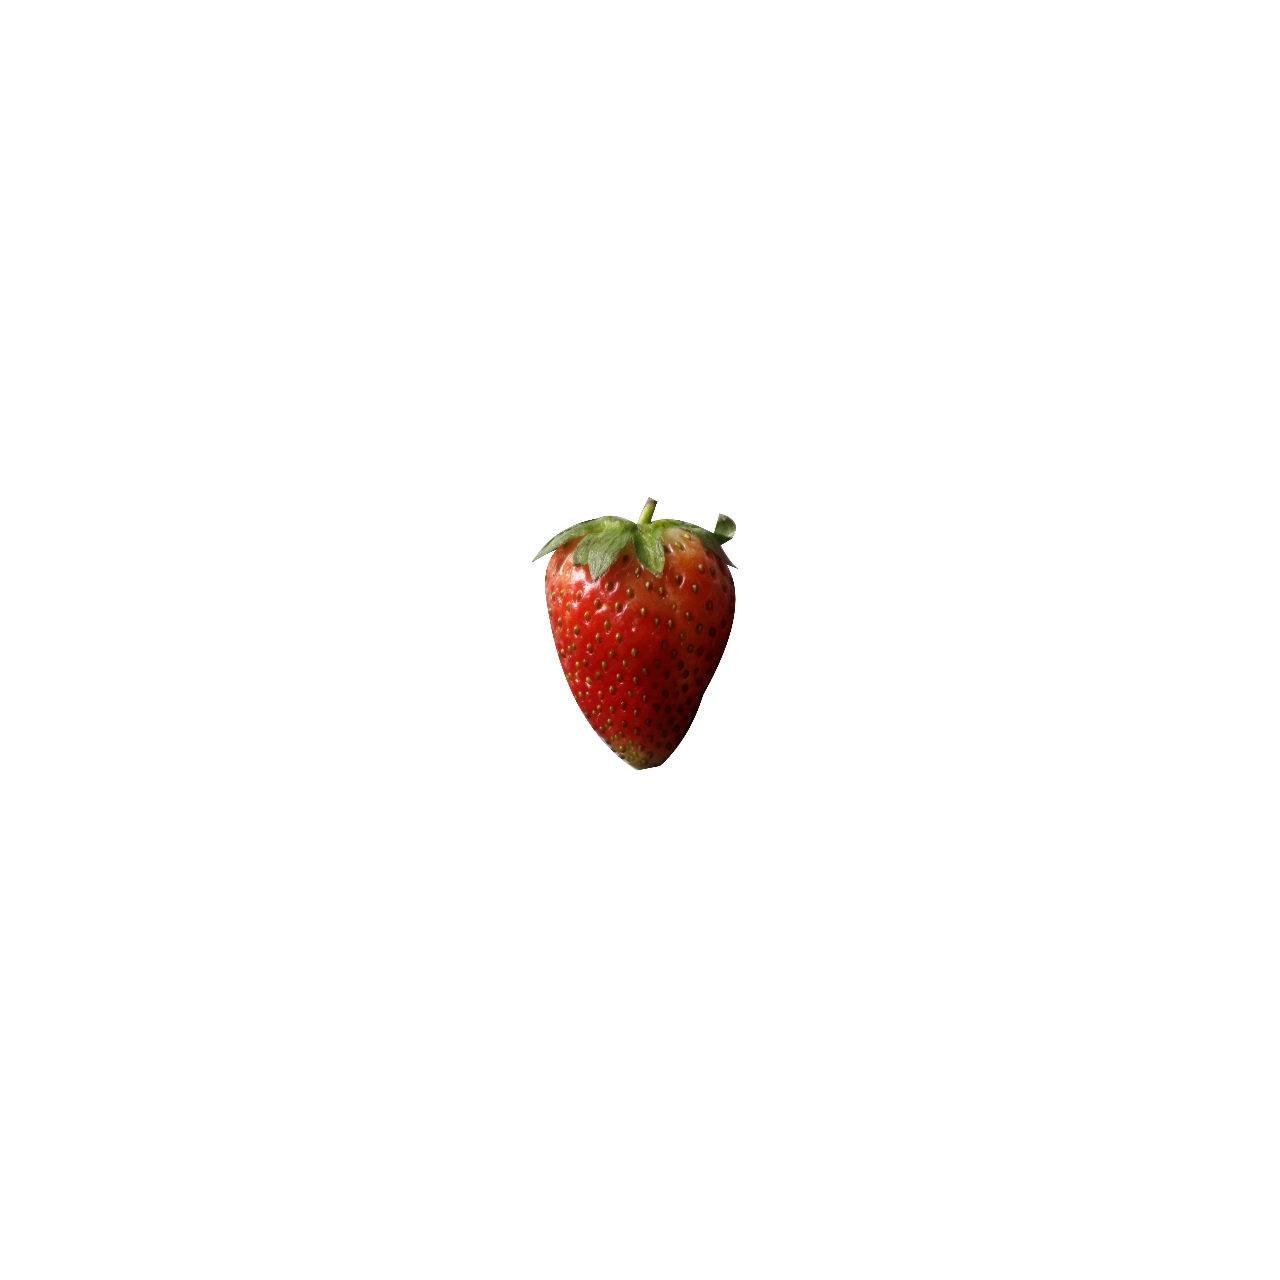 一颗长得不错的草莓